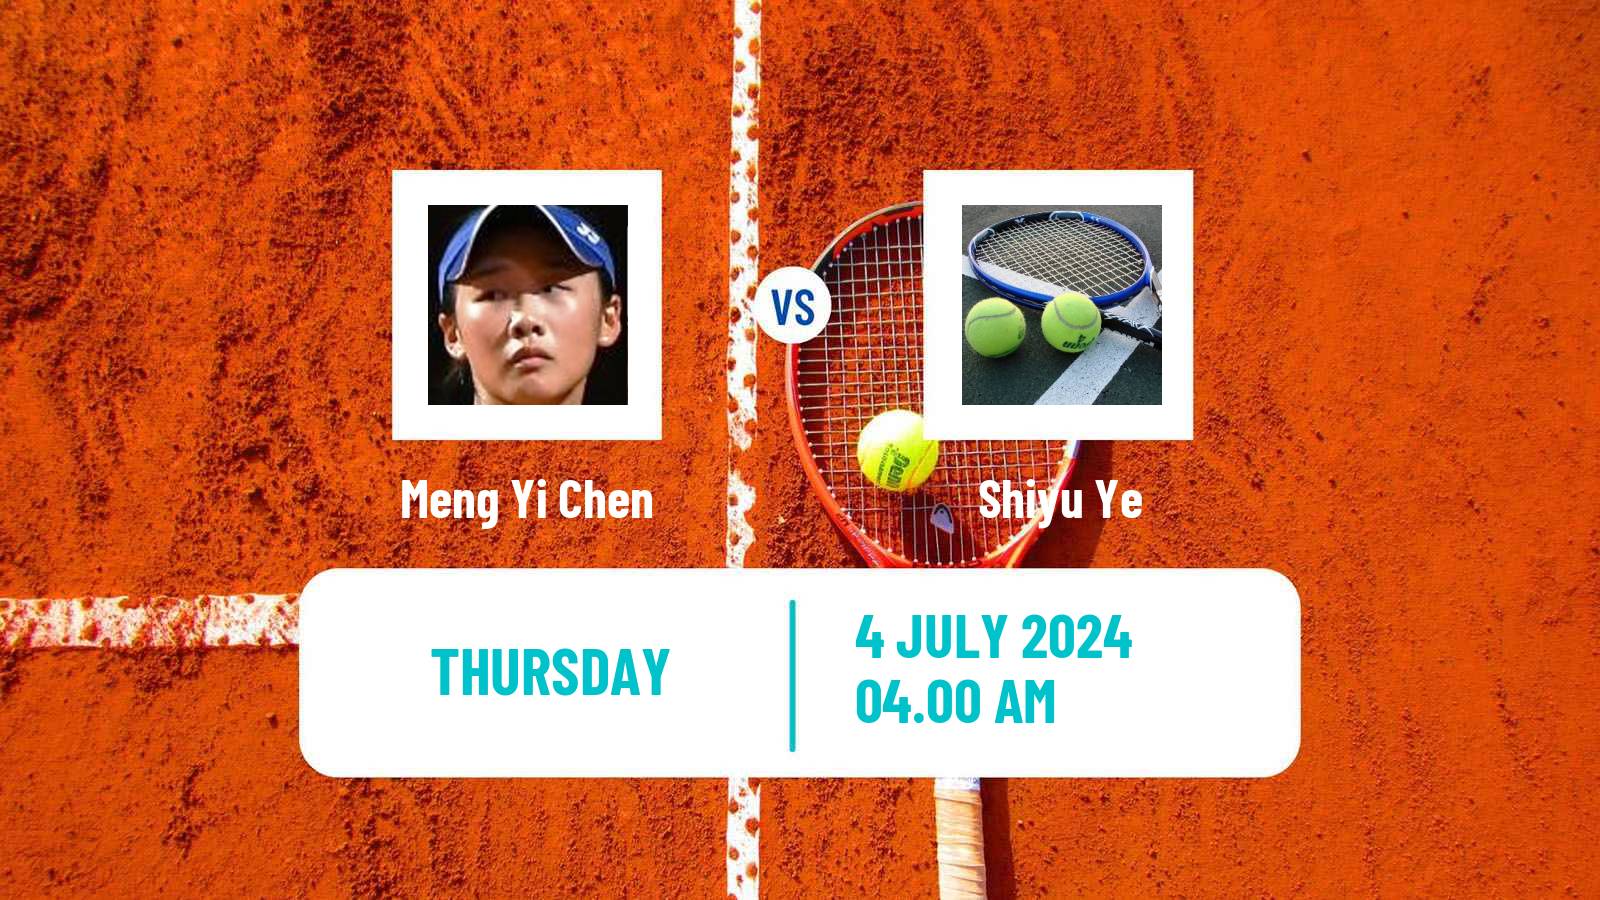 Tennis ITF W15 Tianjin 2 Women Meng Yi Chen - Shiyu Ye